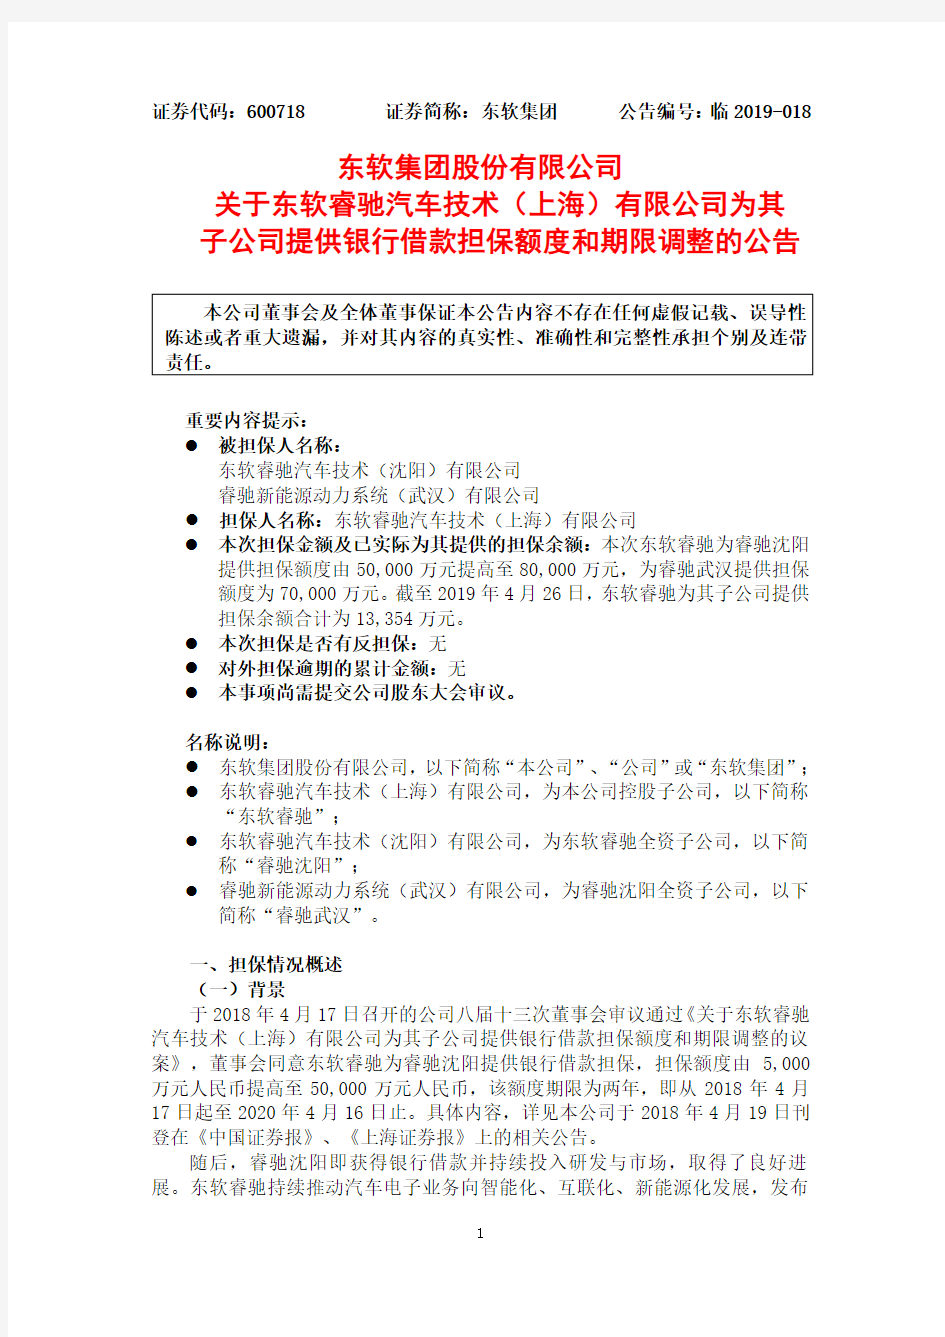 东软集团股份有限公司关于东软睿驰汽车技术(上海)有限公